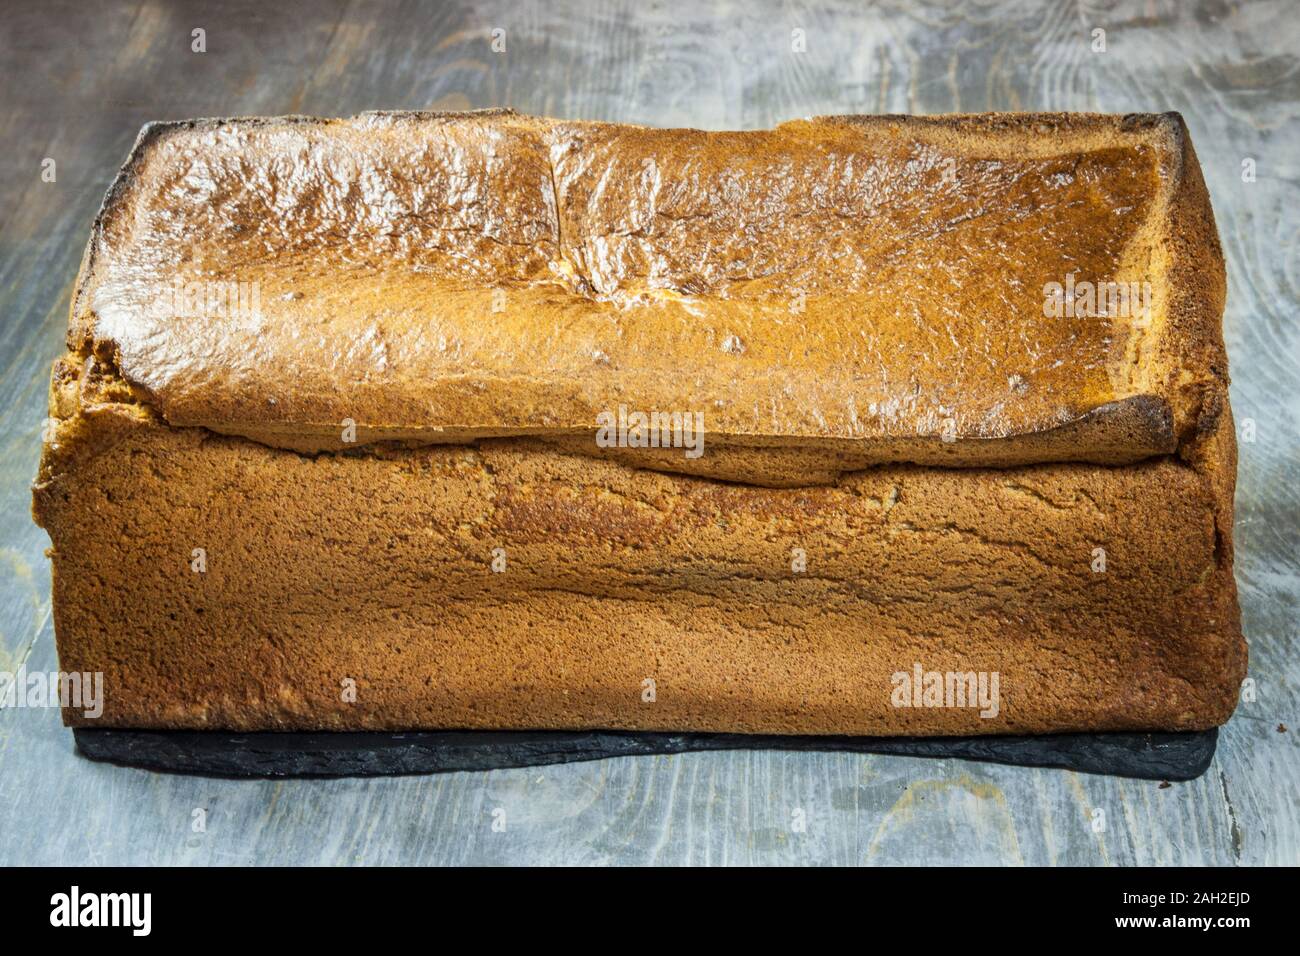 Filone di un francese senza glutine carico di pane, visto da sopra. È stato concepito come alternativa per le persone con problemi sanitari, soprattutto le persone che sono Foto Stock